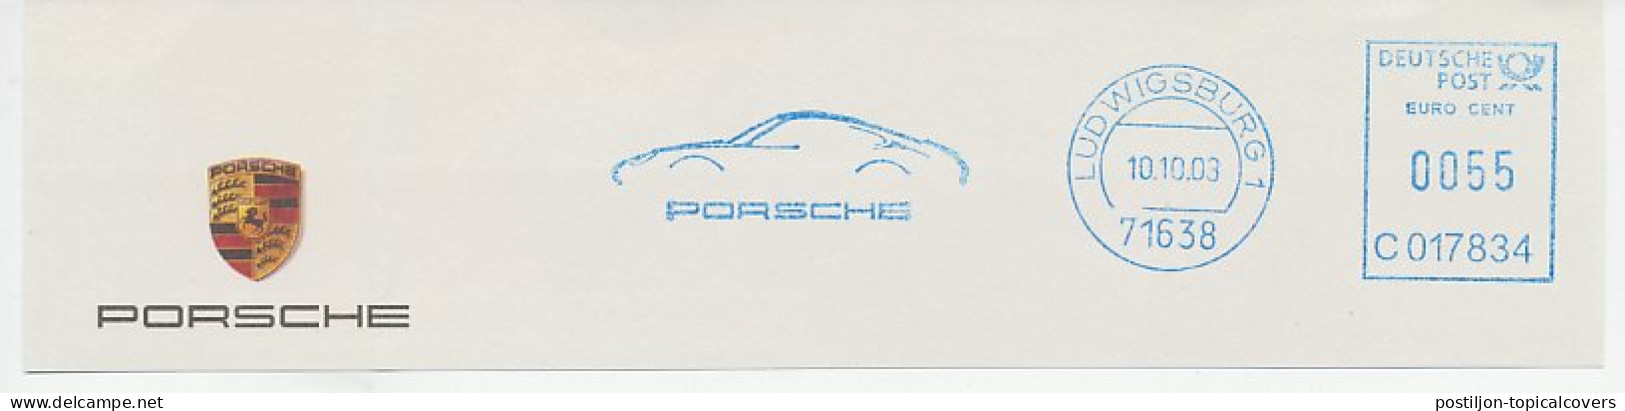 Meter Top Cut Germany 2003 Car - Porsche - Voitures